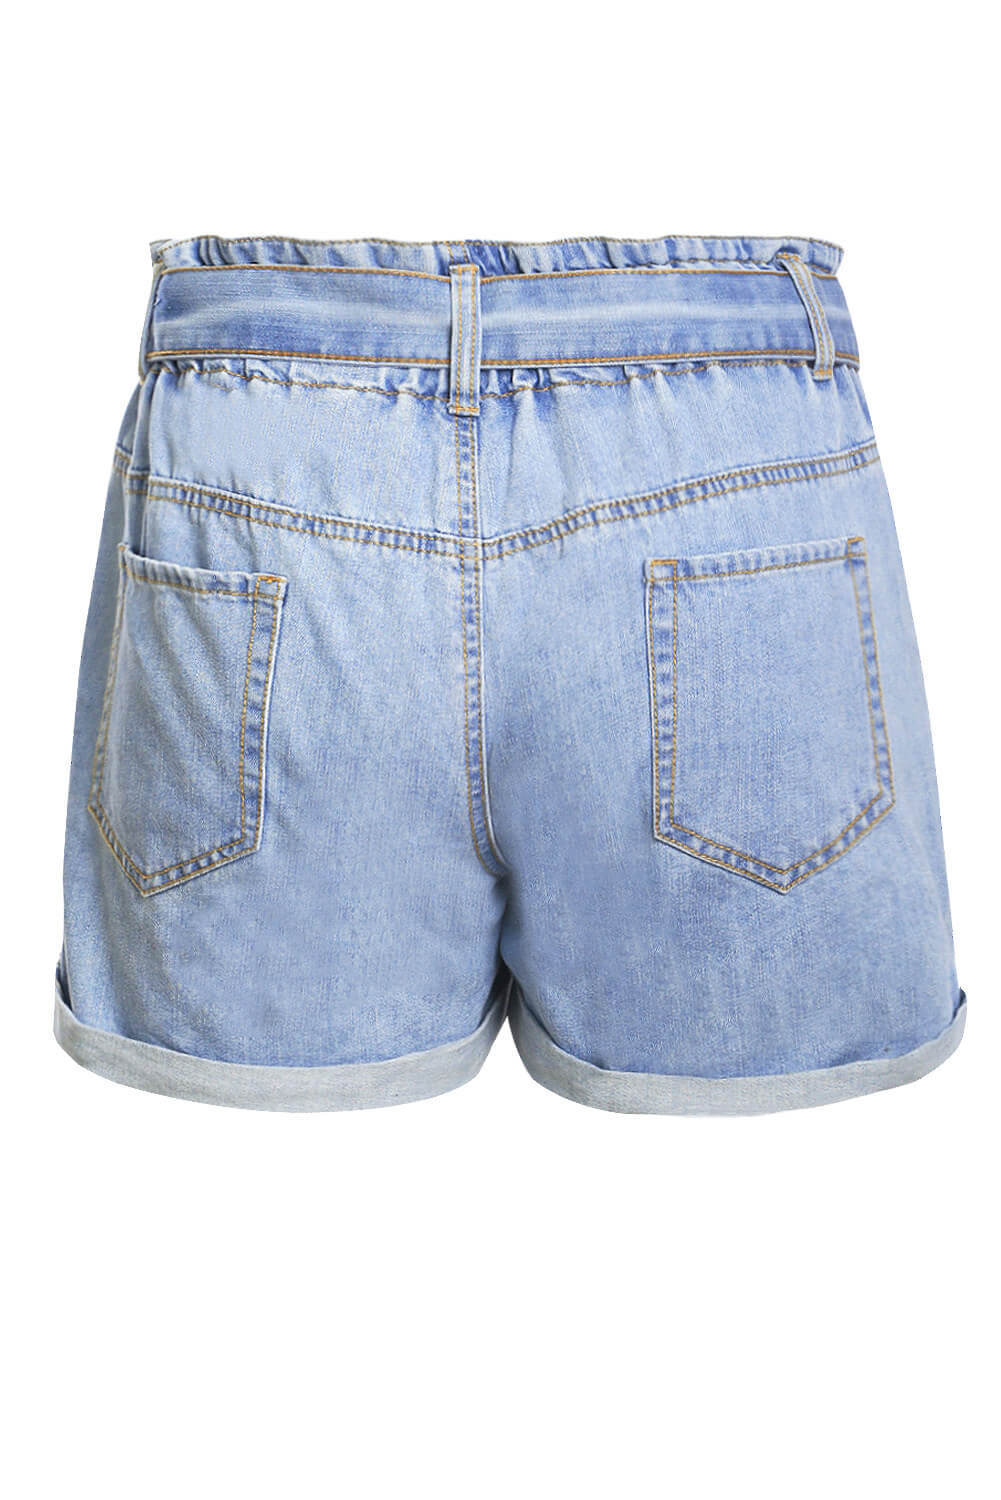 US$8.9 Light Blue Paper Bag Waist Denim Shorts Wholesale Online